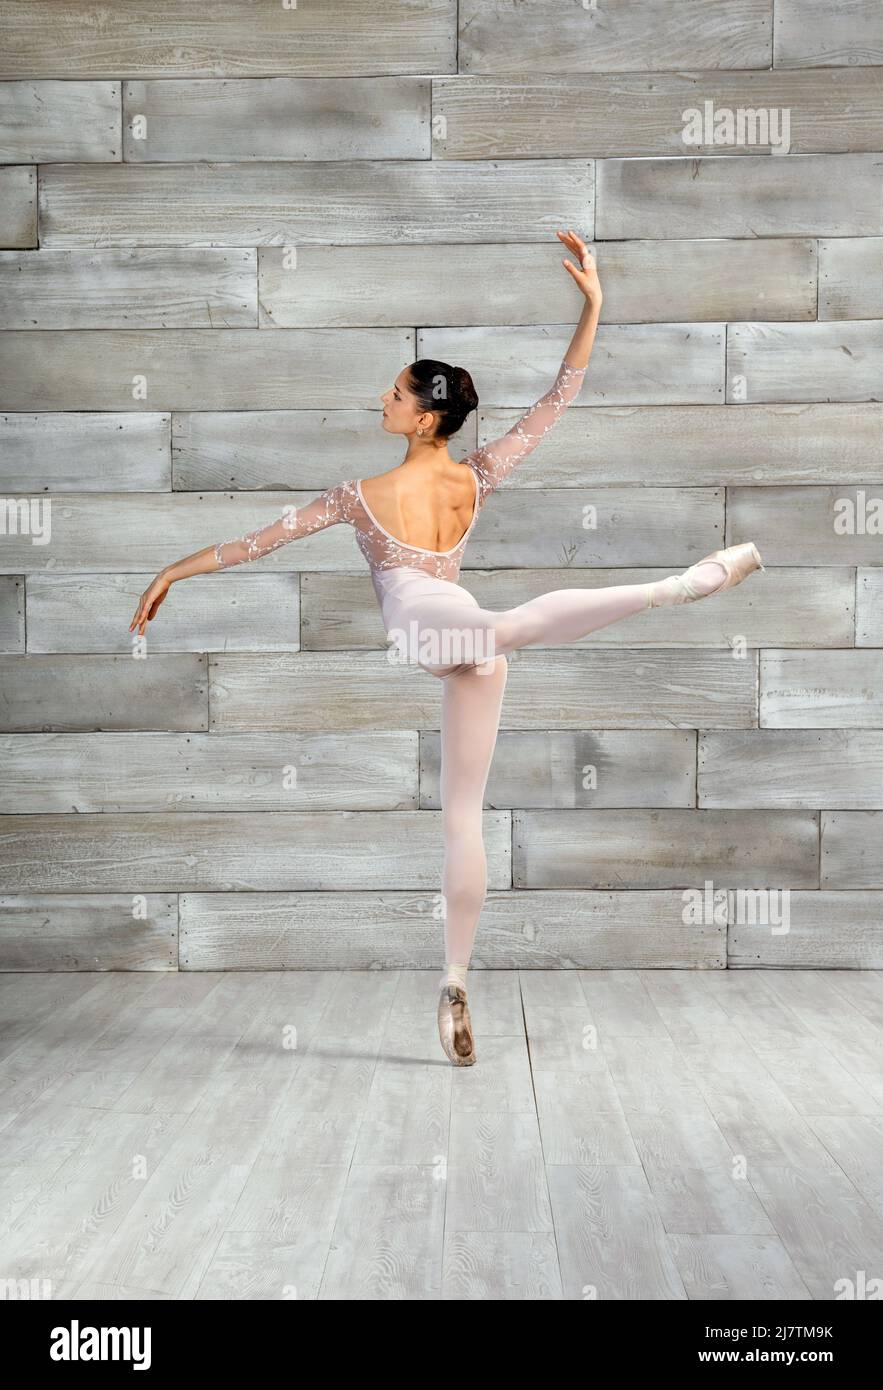 Vista posterior del cuerpo completo de bailarina de ballet flexible con actitud Pose con la pierna elevada mientras baila en un estudio ligero Foto de stock